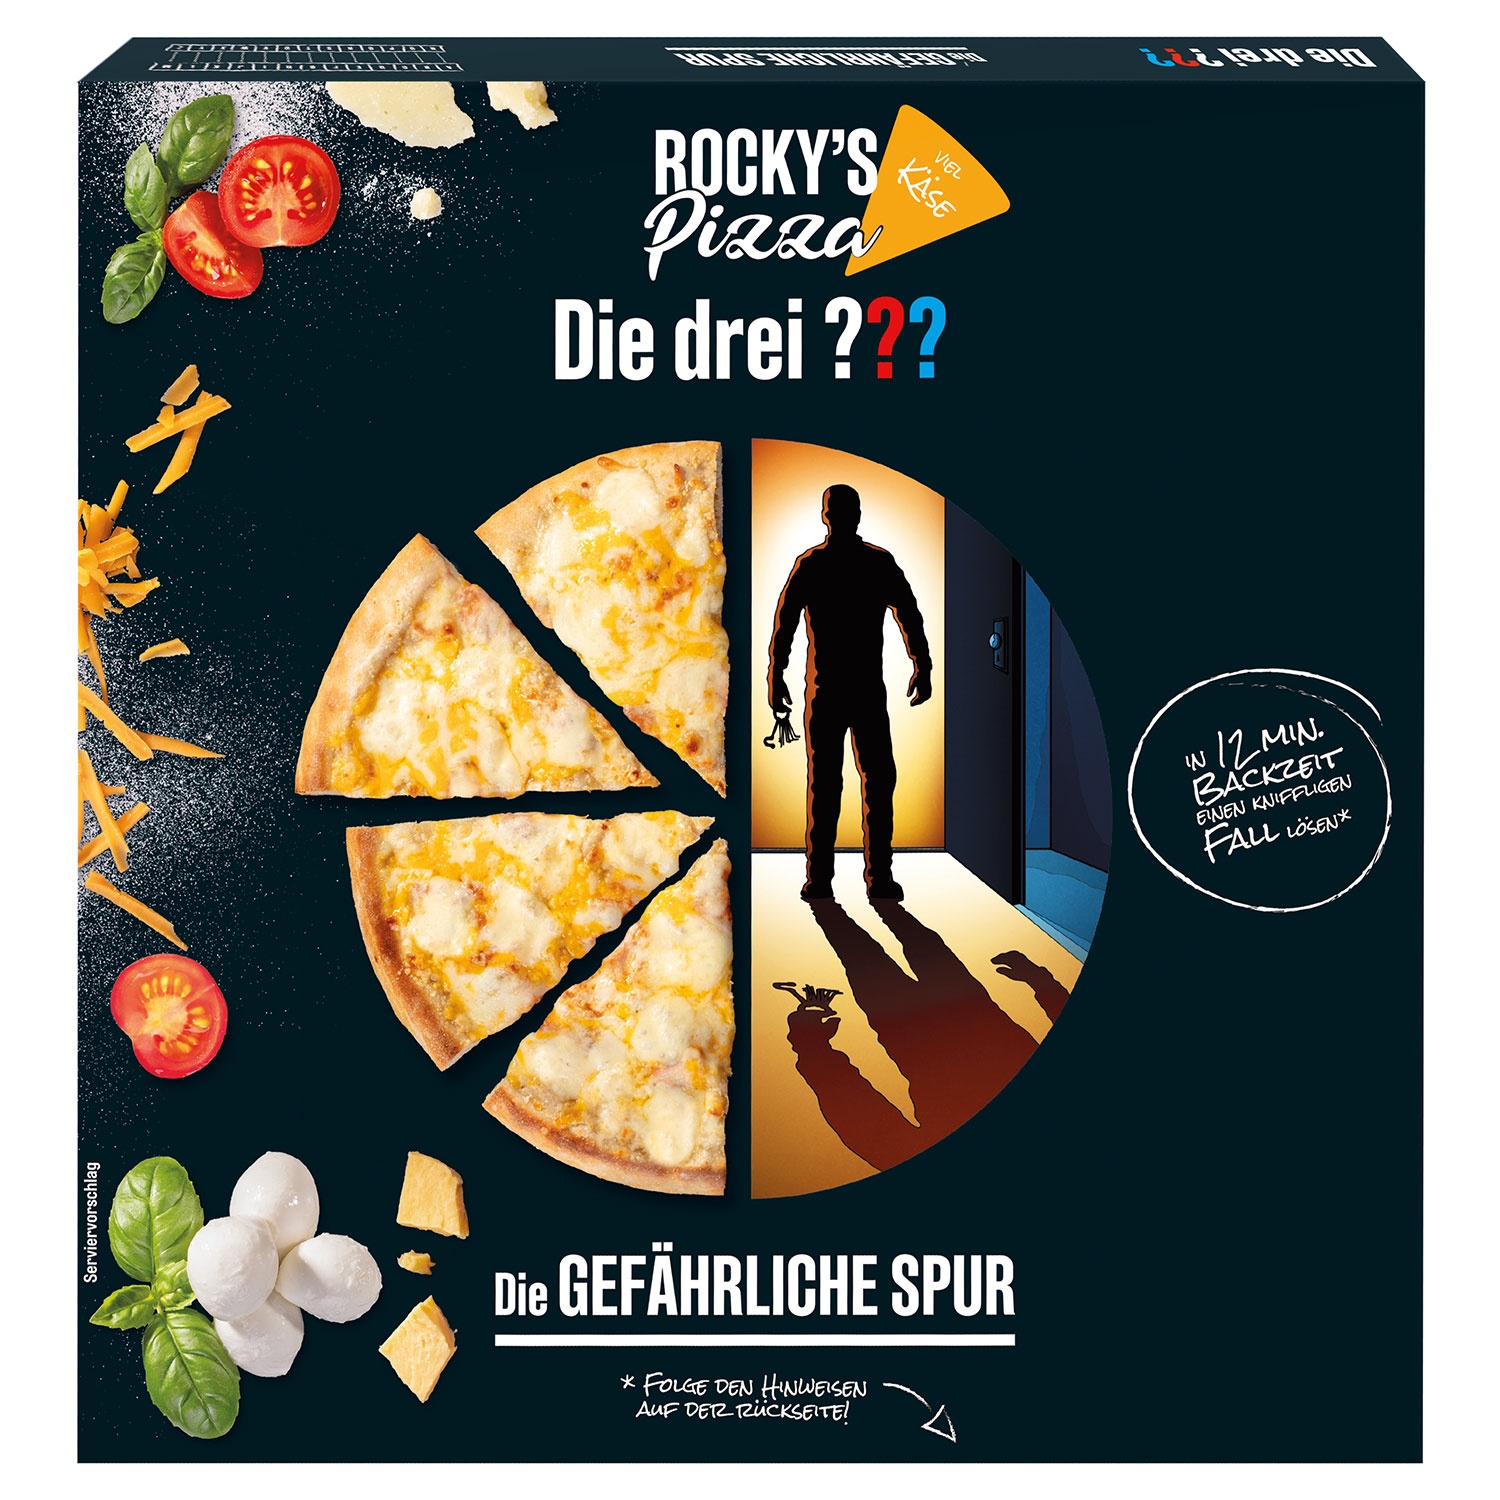 ROCKY'S PIZZA Die drei ??? Pizza 430 g